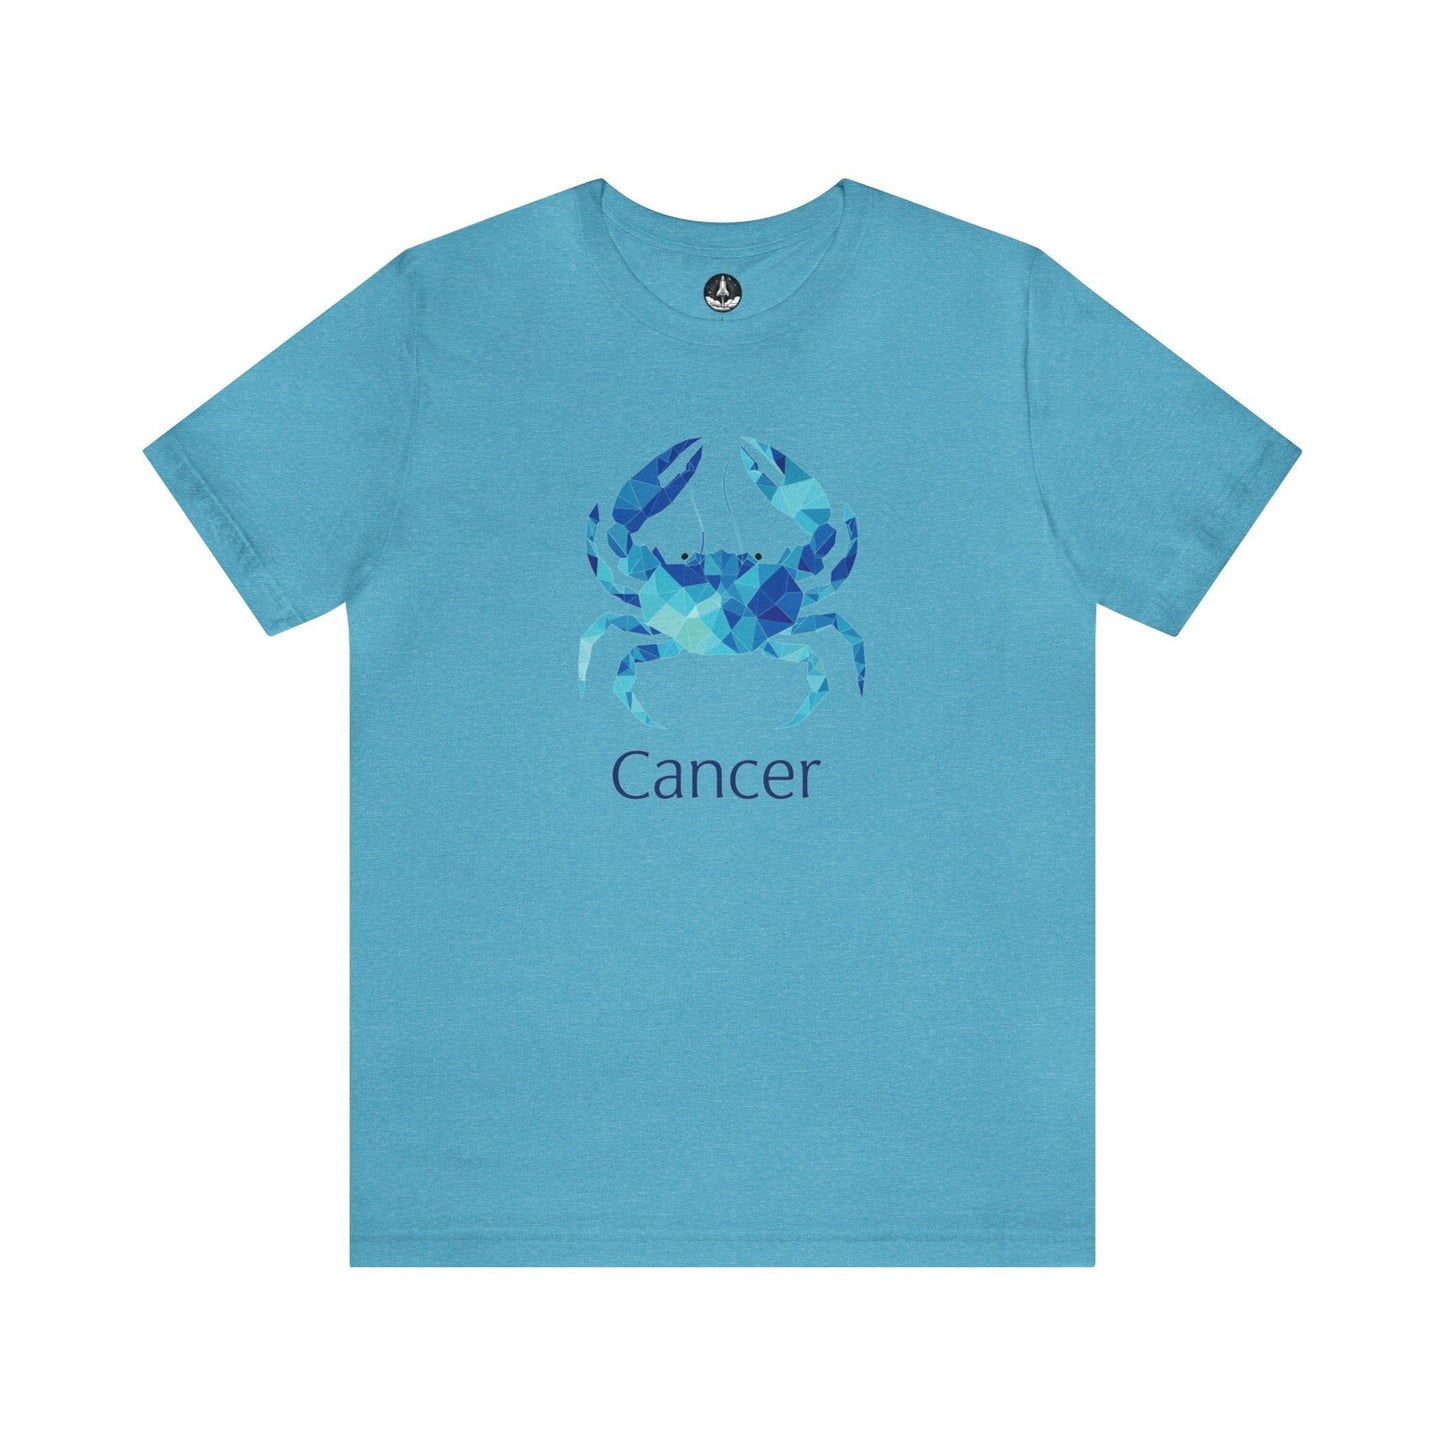 T-Shirt Heather Aqua / S Cancer Geometric Constellation T-Shirt: Modern Astrology Meets Art